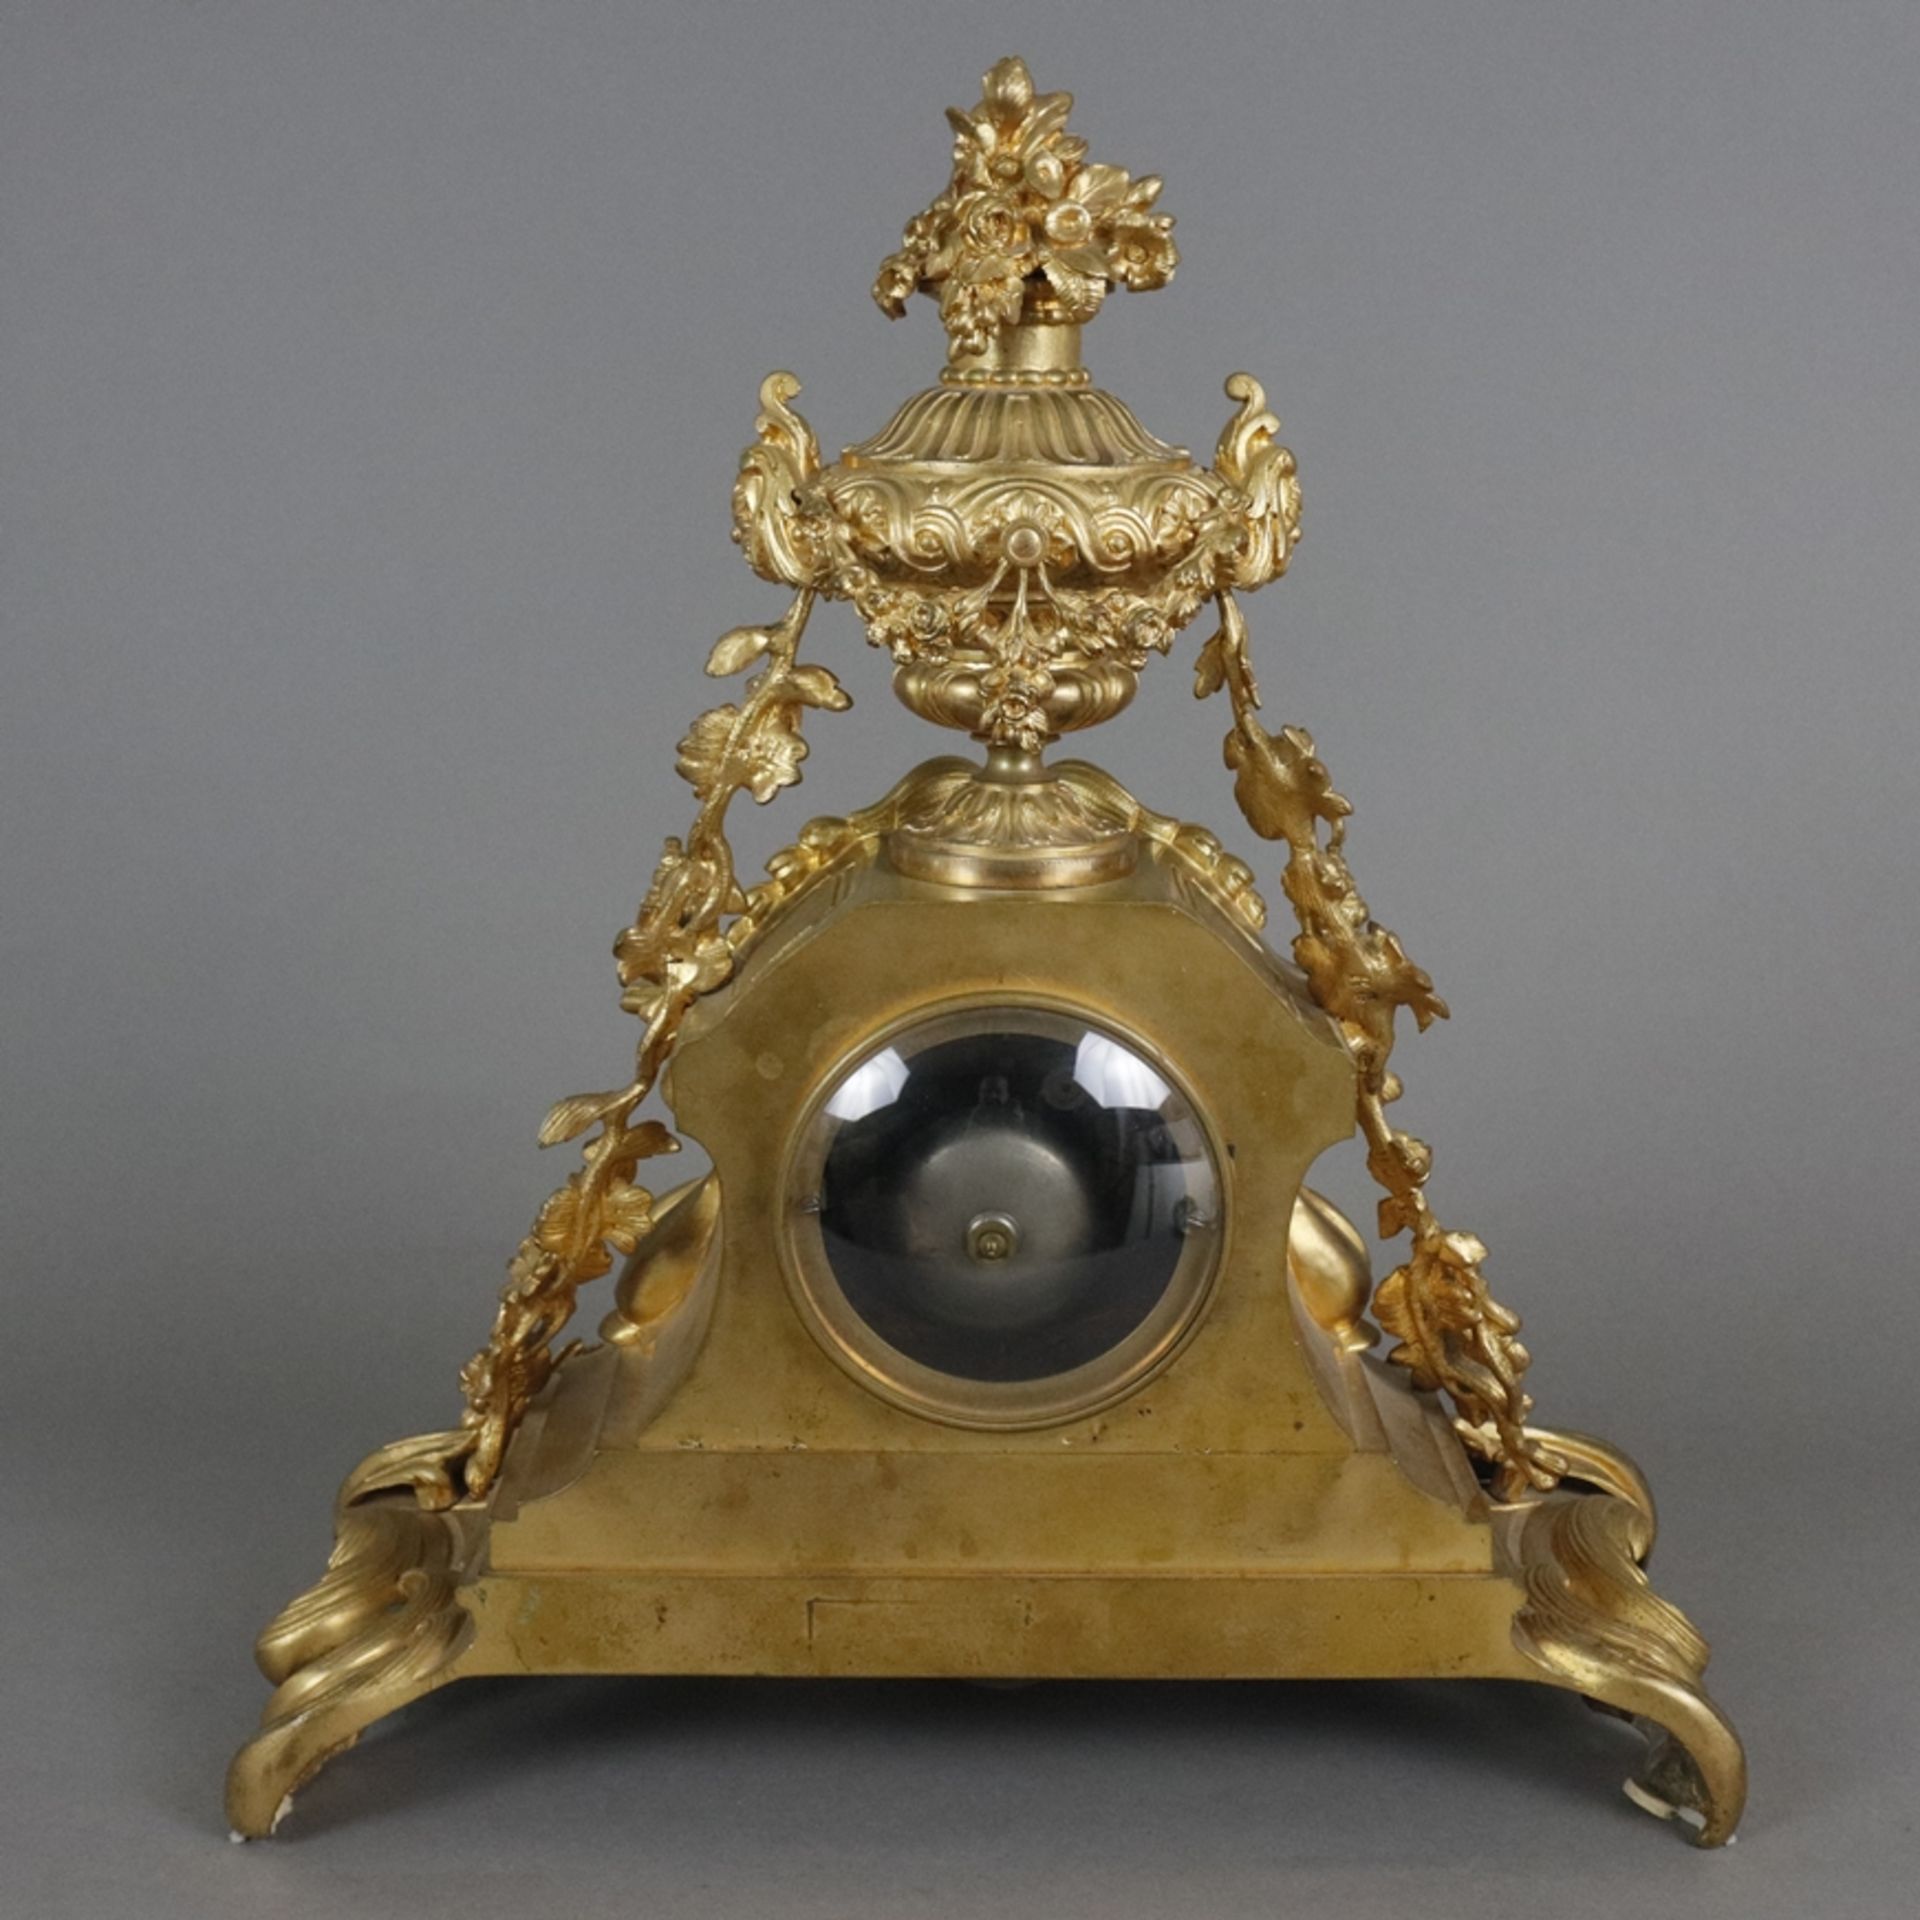 Prunkvolle Pendule - Paris, Frankreich, um 1800, vergoldetes Bronzegehäuse, reich verziert mit Akan - Image 12 of 15